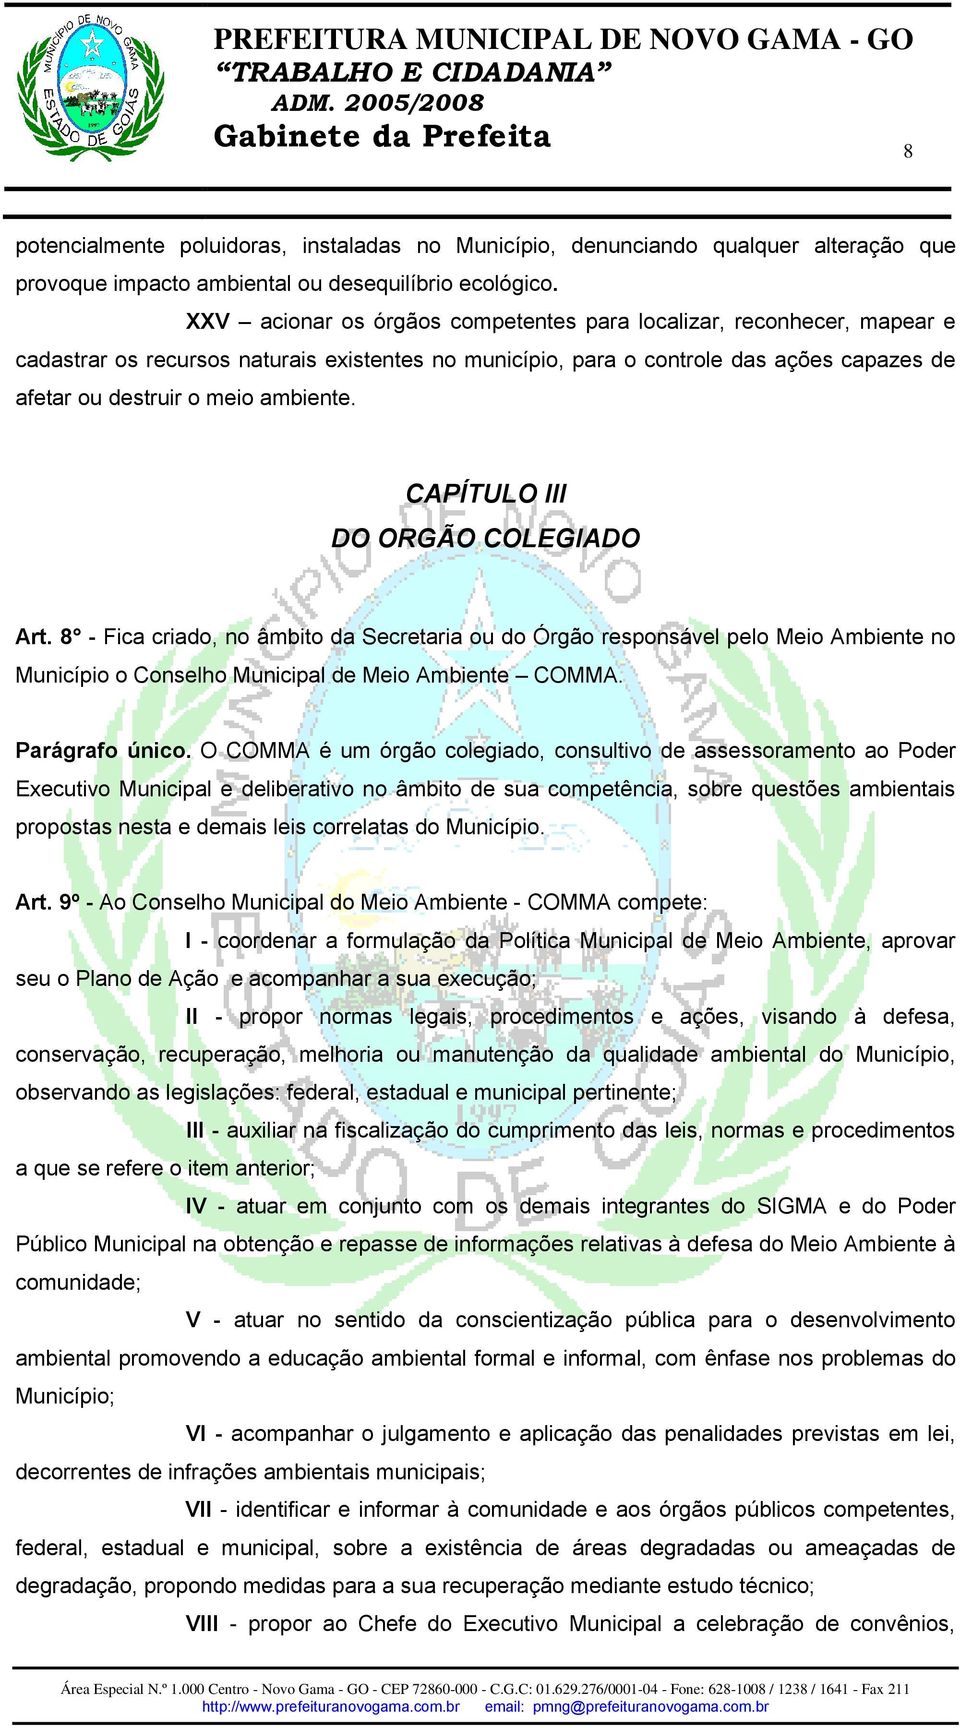 CAPÍTULO III DO ORGÃO COLEGIADO Art. 8 - Fica criado, no âmbito da Secretaria ou do Órgão responsável pelo Meio Ambiente no Município o Conselho Municipal de Meio Ambiente COMMA. Parágrafo único.